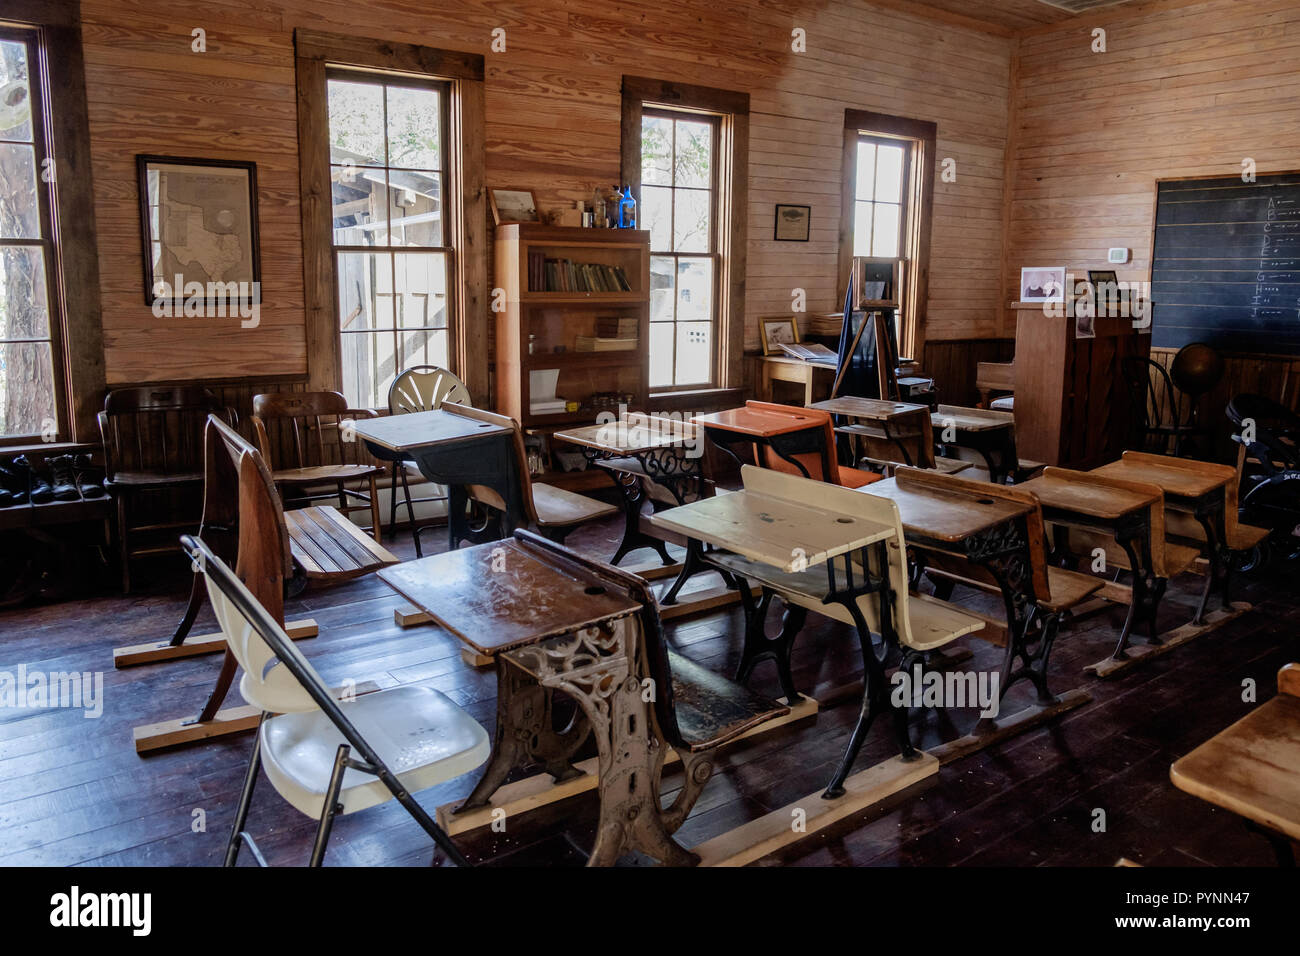 Vintage aula en una habitación vieja escuela con escritorios y sillas de madera de estilo rústico. Wilmeth Schoolhouse, plaza de castaños, McKinney Texas horizontal. Foto de stock